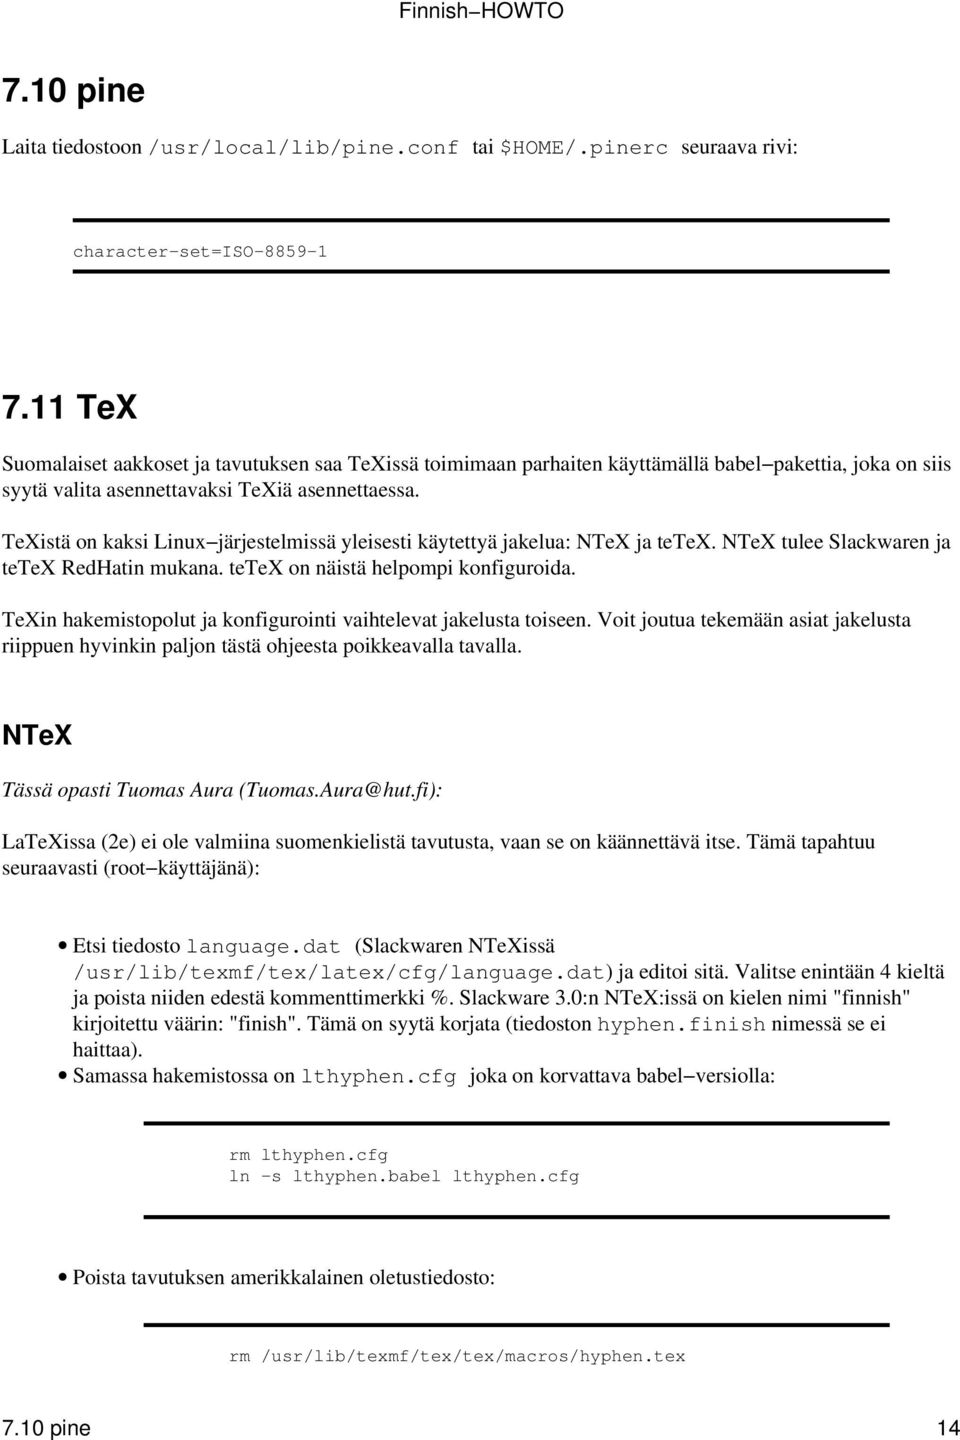 TeXistä on kaksi Linux järjestelmissä yleisesti käytettyä jakelua: NTeX ja tetex. NTeX tulee Slackwaren ja tetex RedHatin mukana. tetex on näistä helpompi konfiguroida.